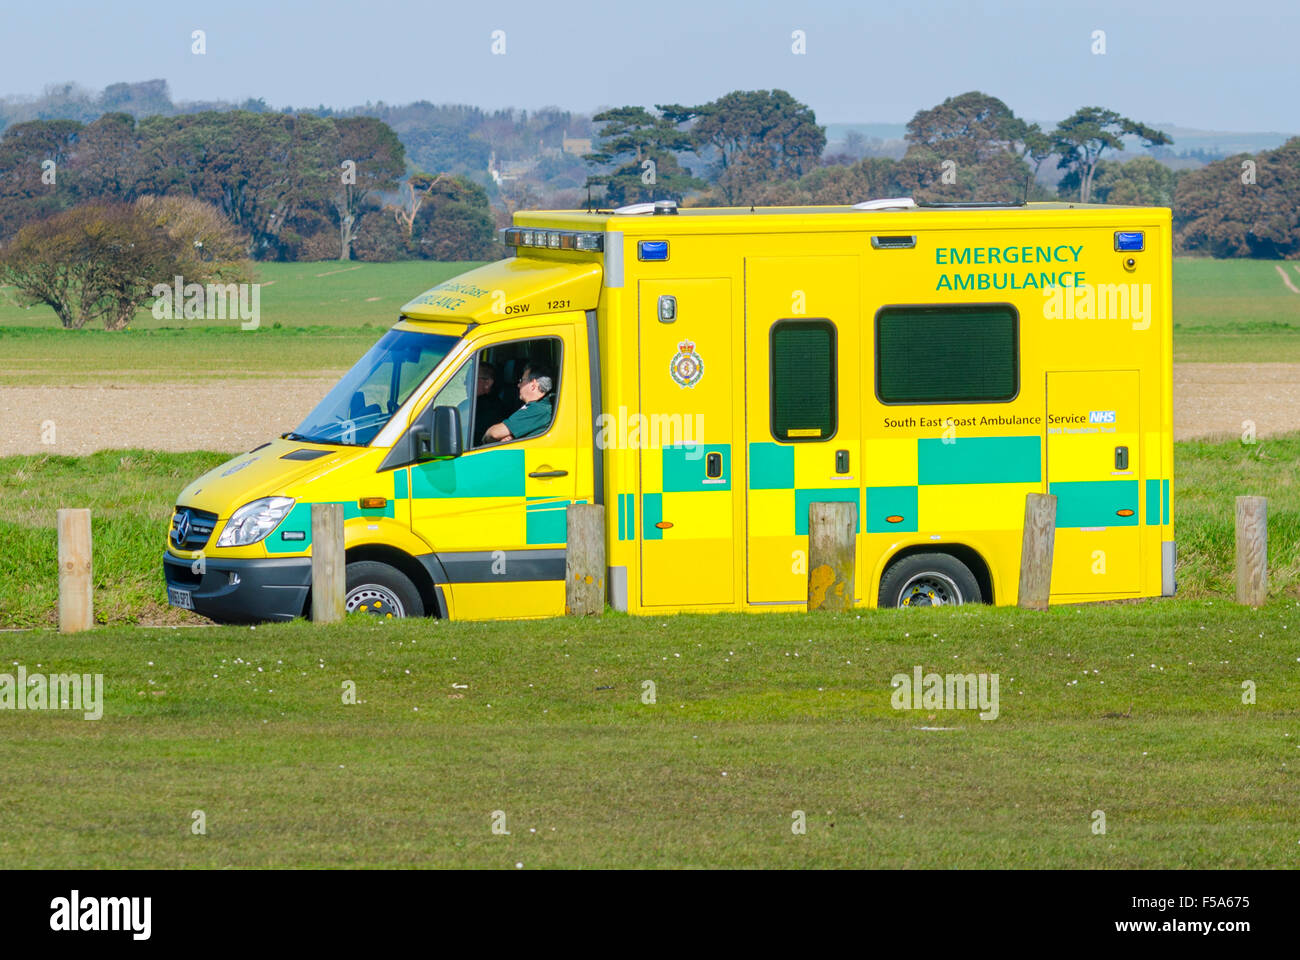 L'ambulance de la côte sud-est du NHS stationnée pendant que l'équipage prend un déjeuner, à West Sussex, en Angleterre, au Royaume-Uni. Mercedes Benz Sprinter. Banque D'Images